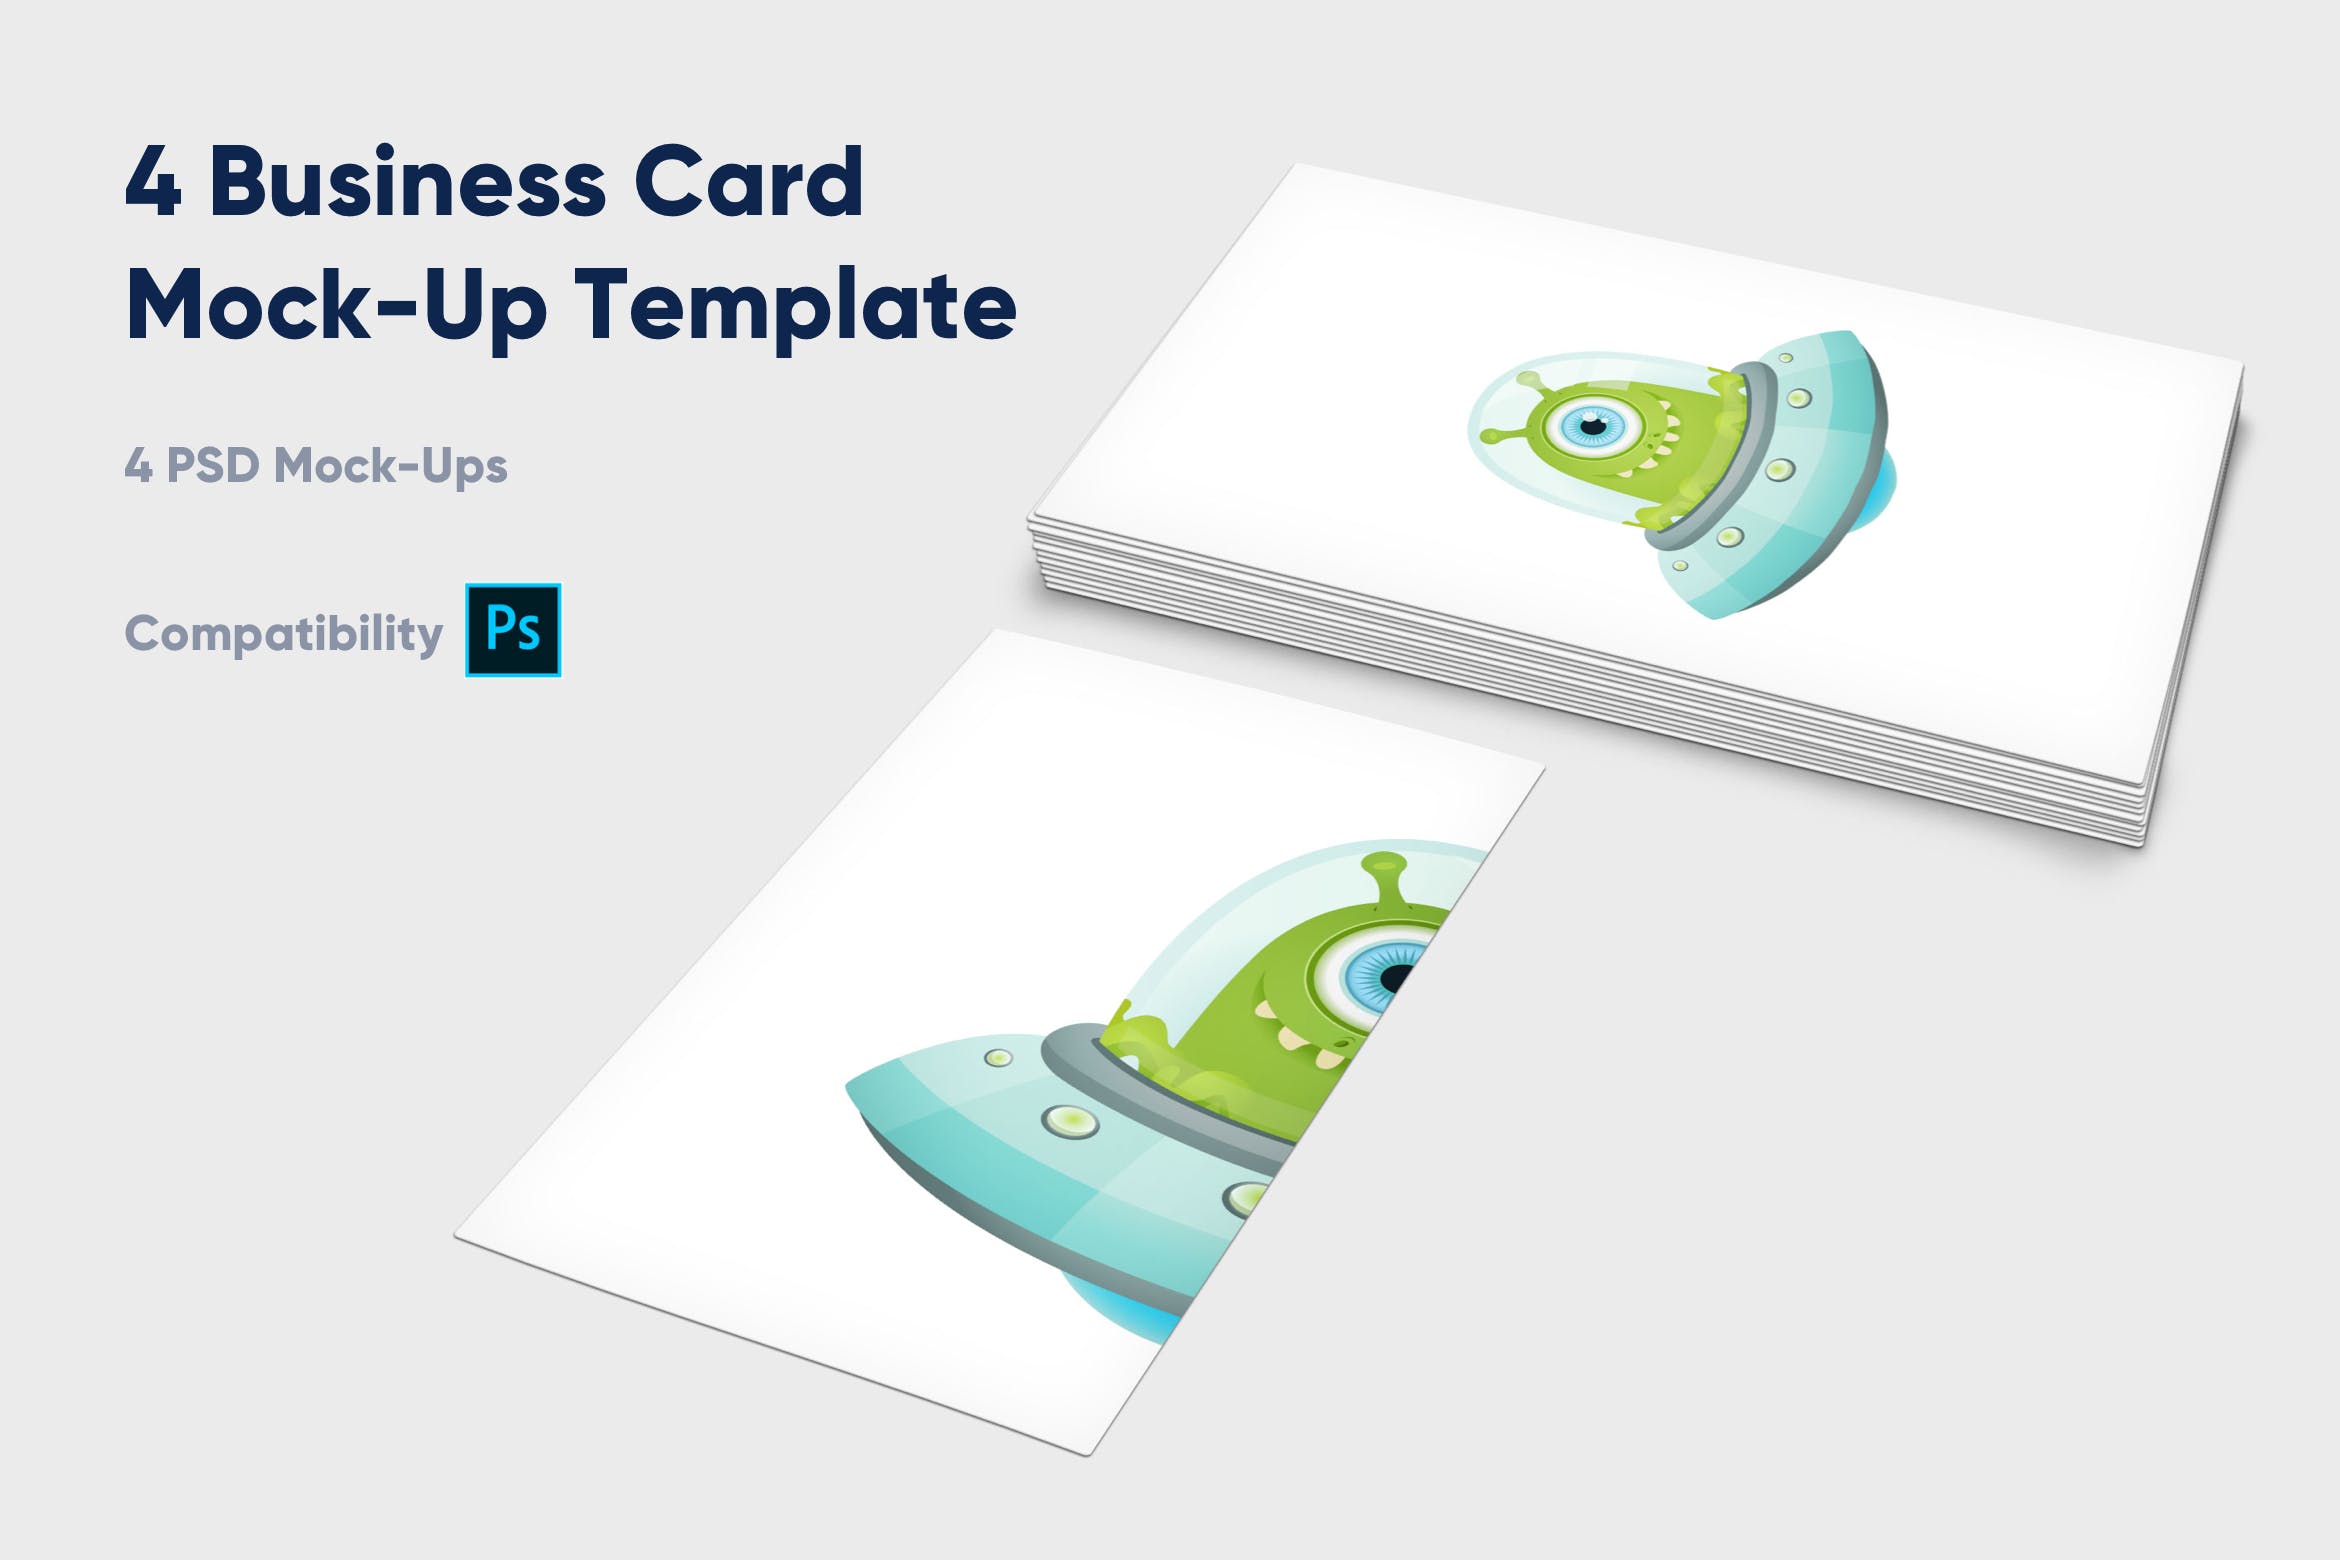 企业名片设计效果图展示样机素材中国精选模板 4 Business Card Mock-Up Template插图